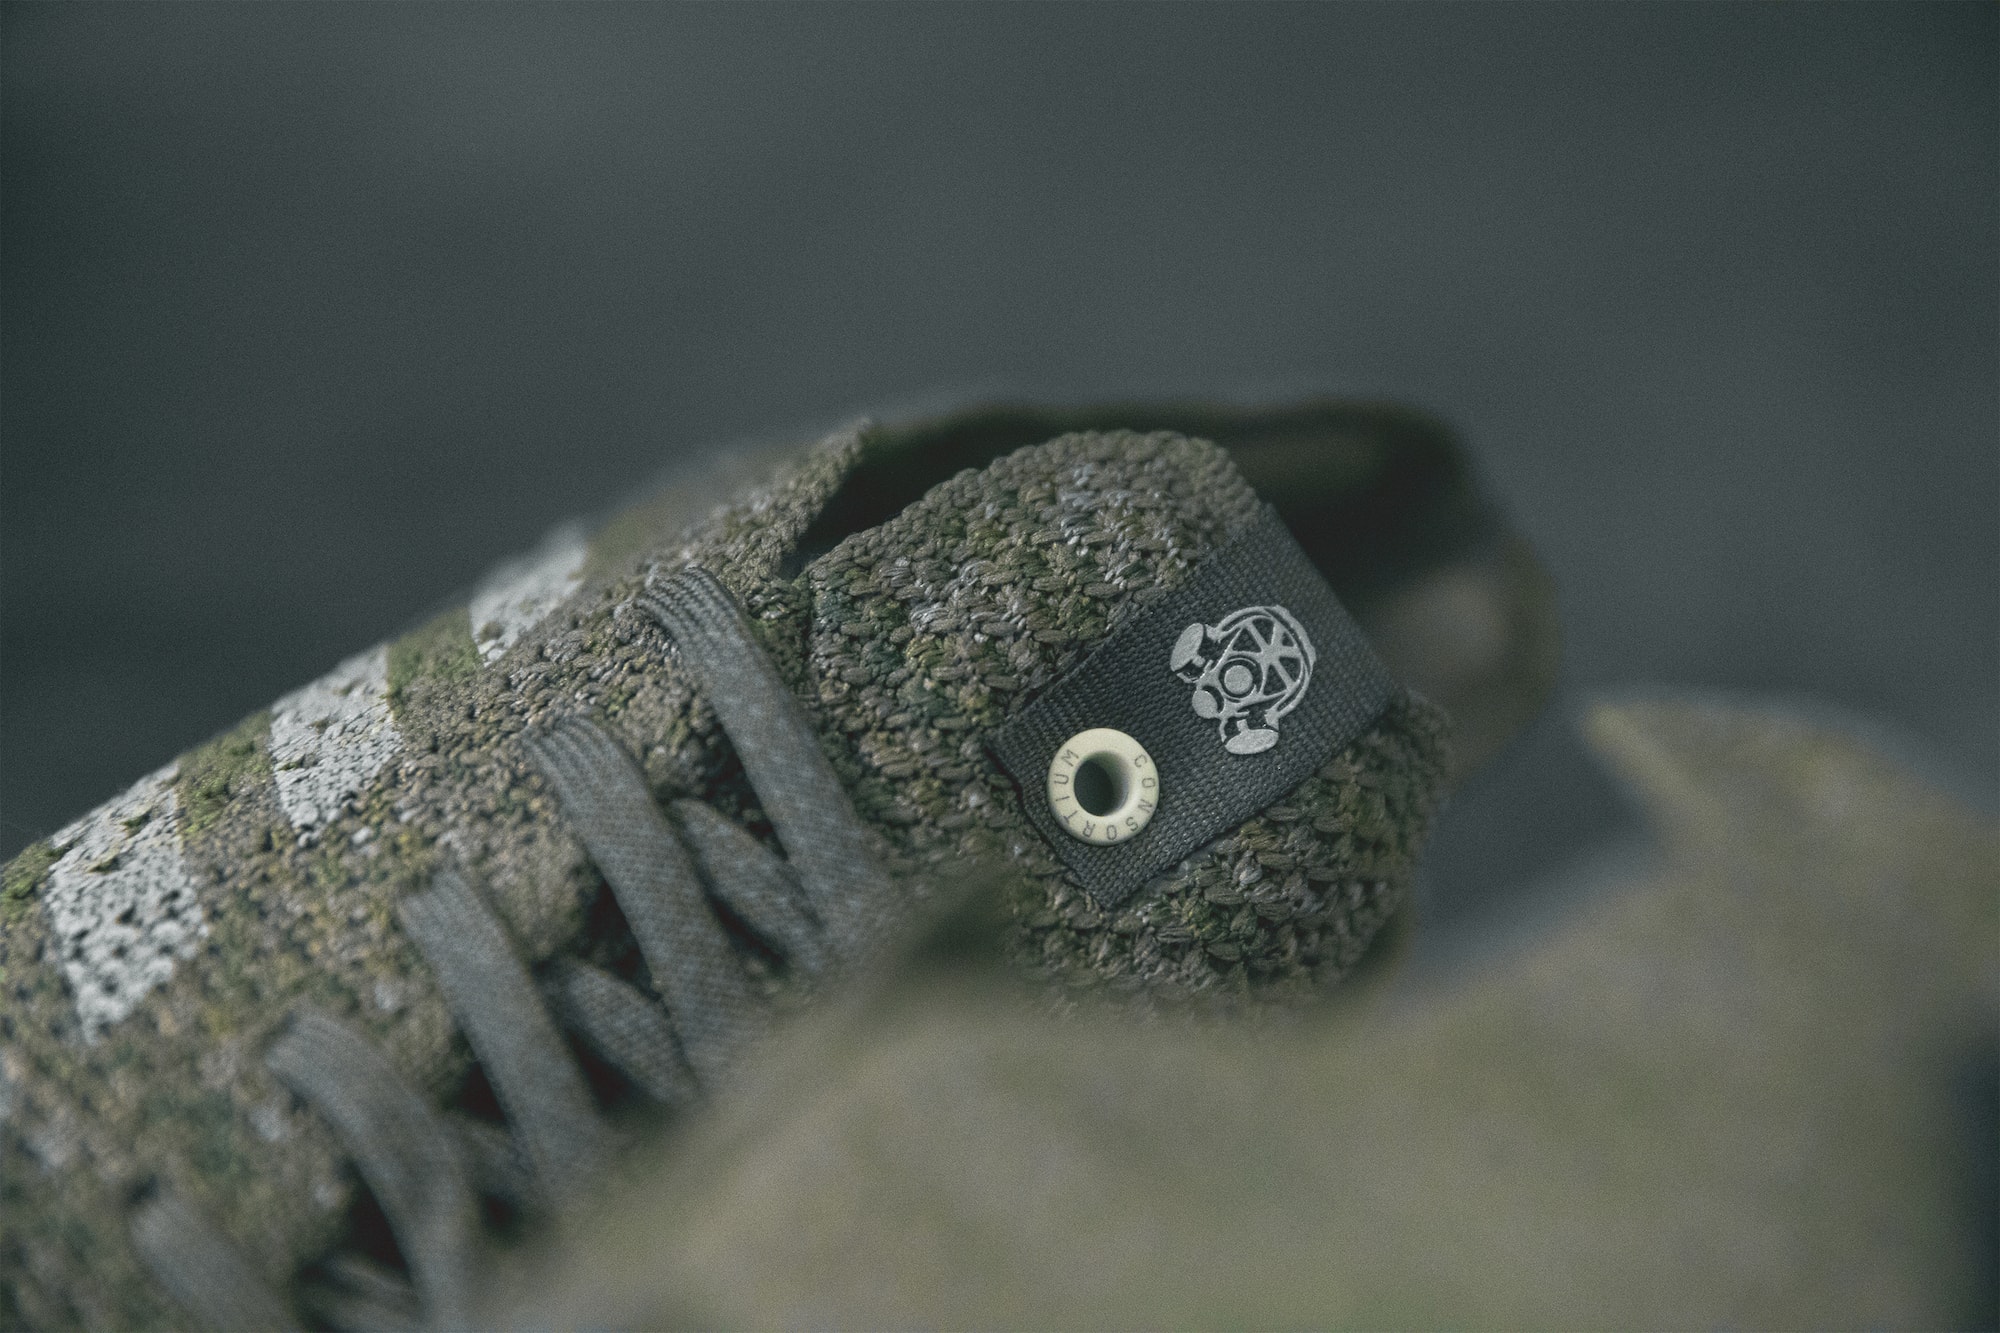 近賞 adidas Consortium x Footpatrol 聯名 FUTURECRAFT 4D 鞋款